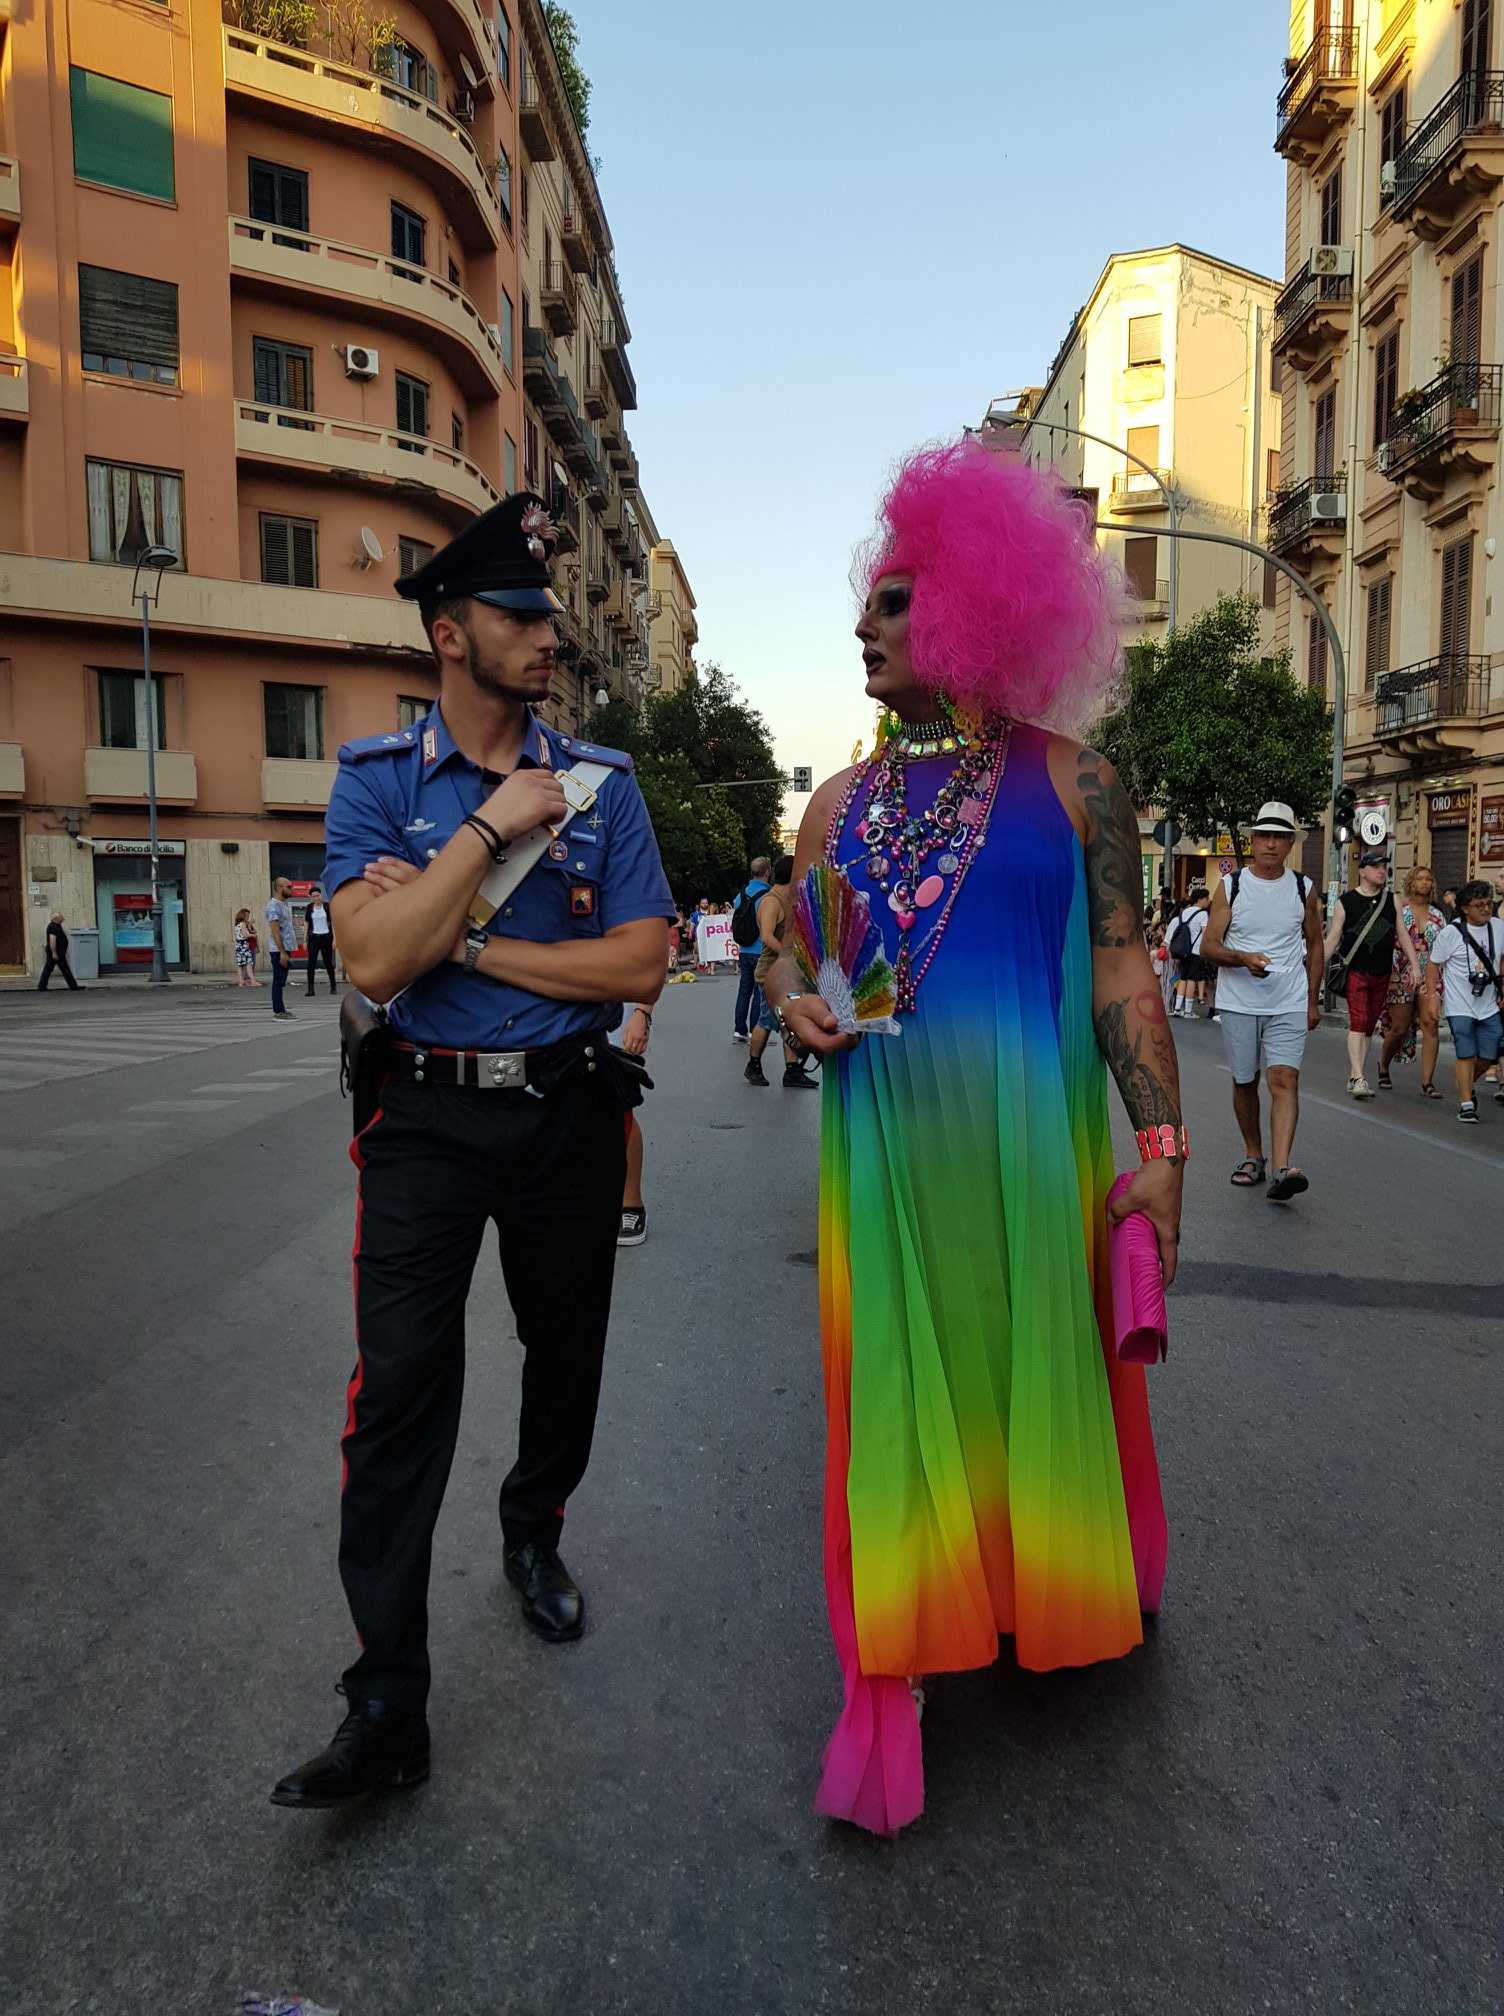 carabiniere drag queen gay pride palermo